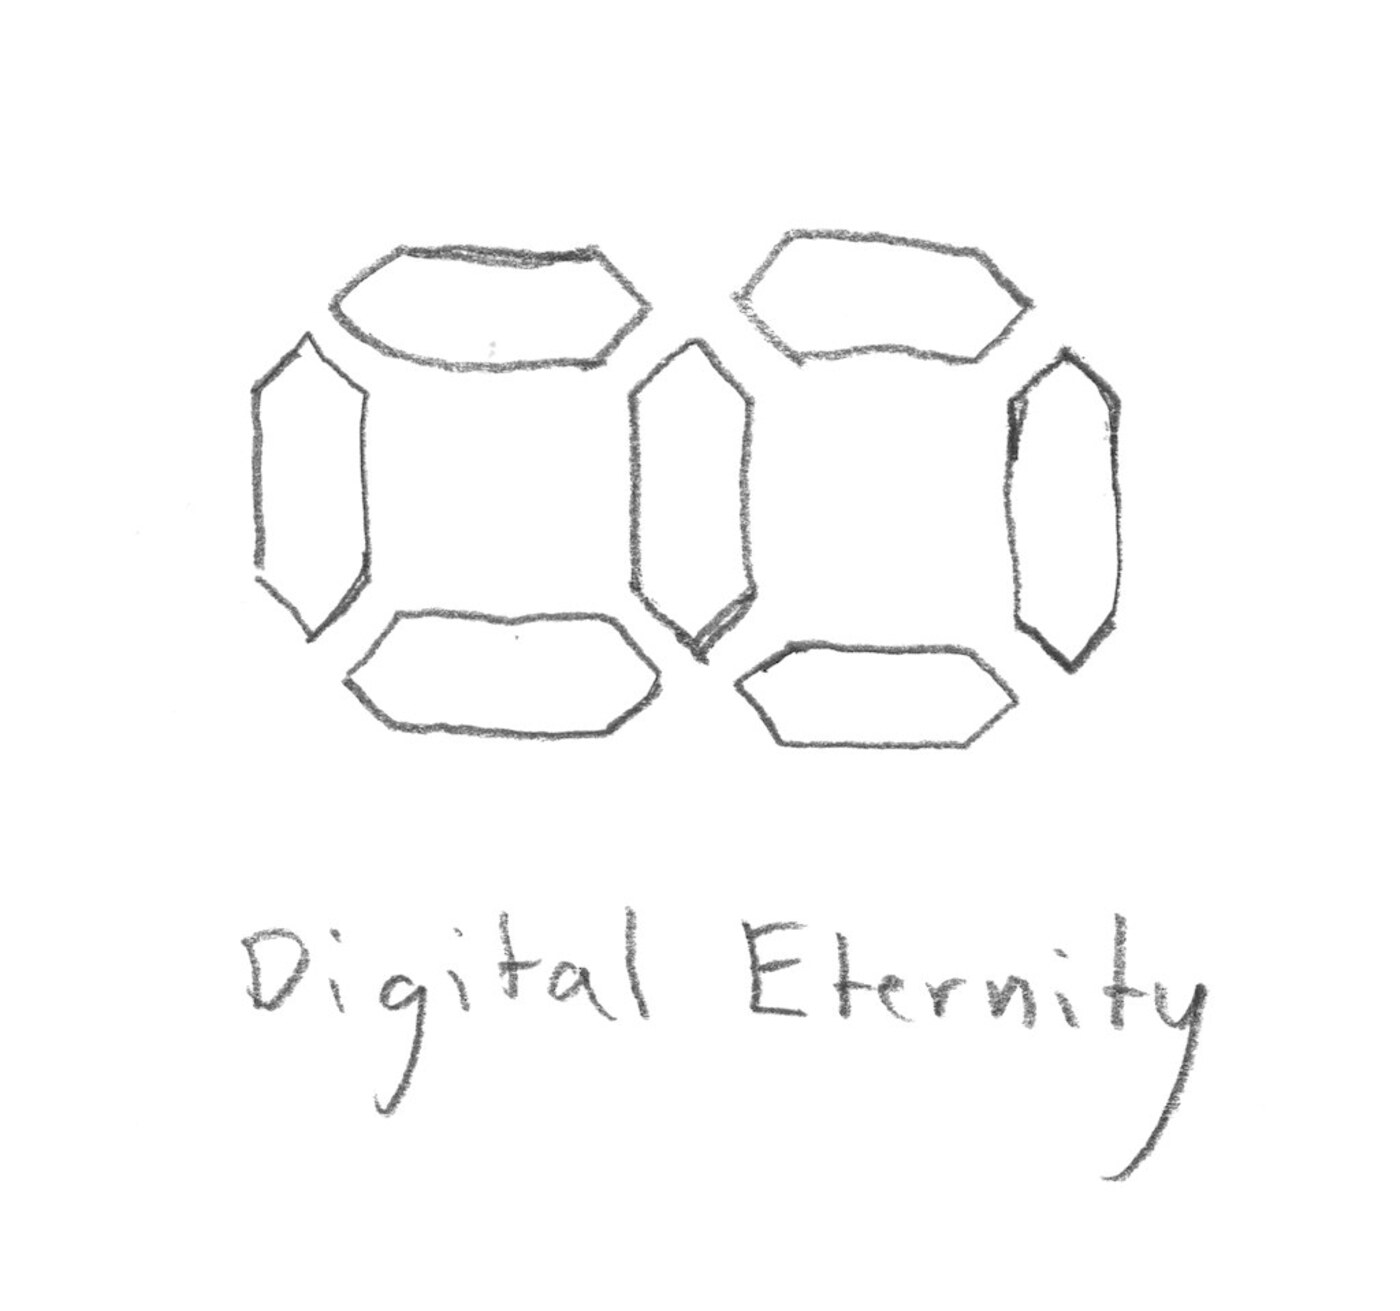 digital-eternity_4461591101_o.jpg